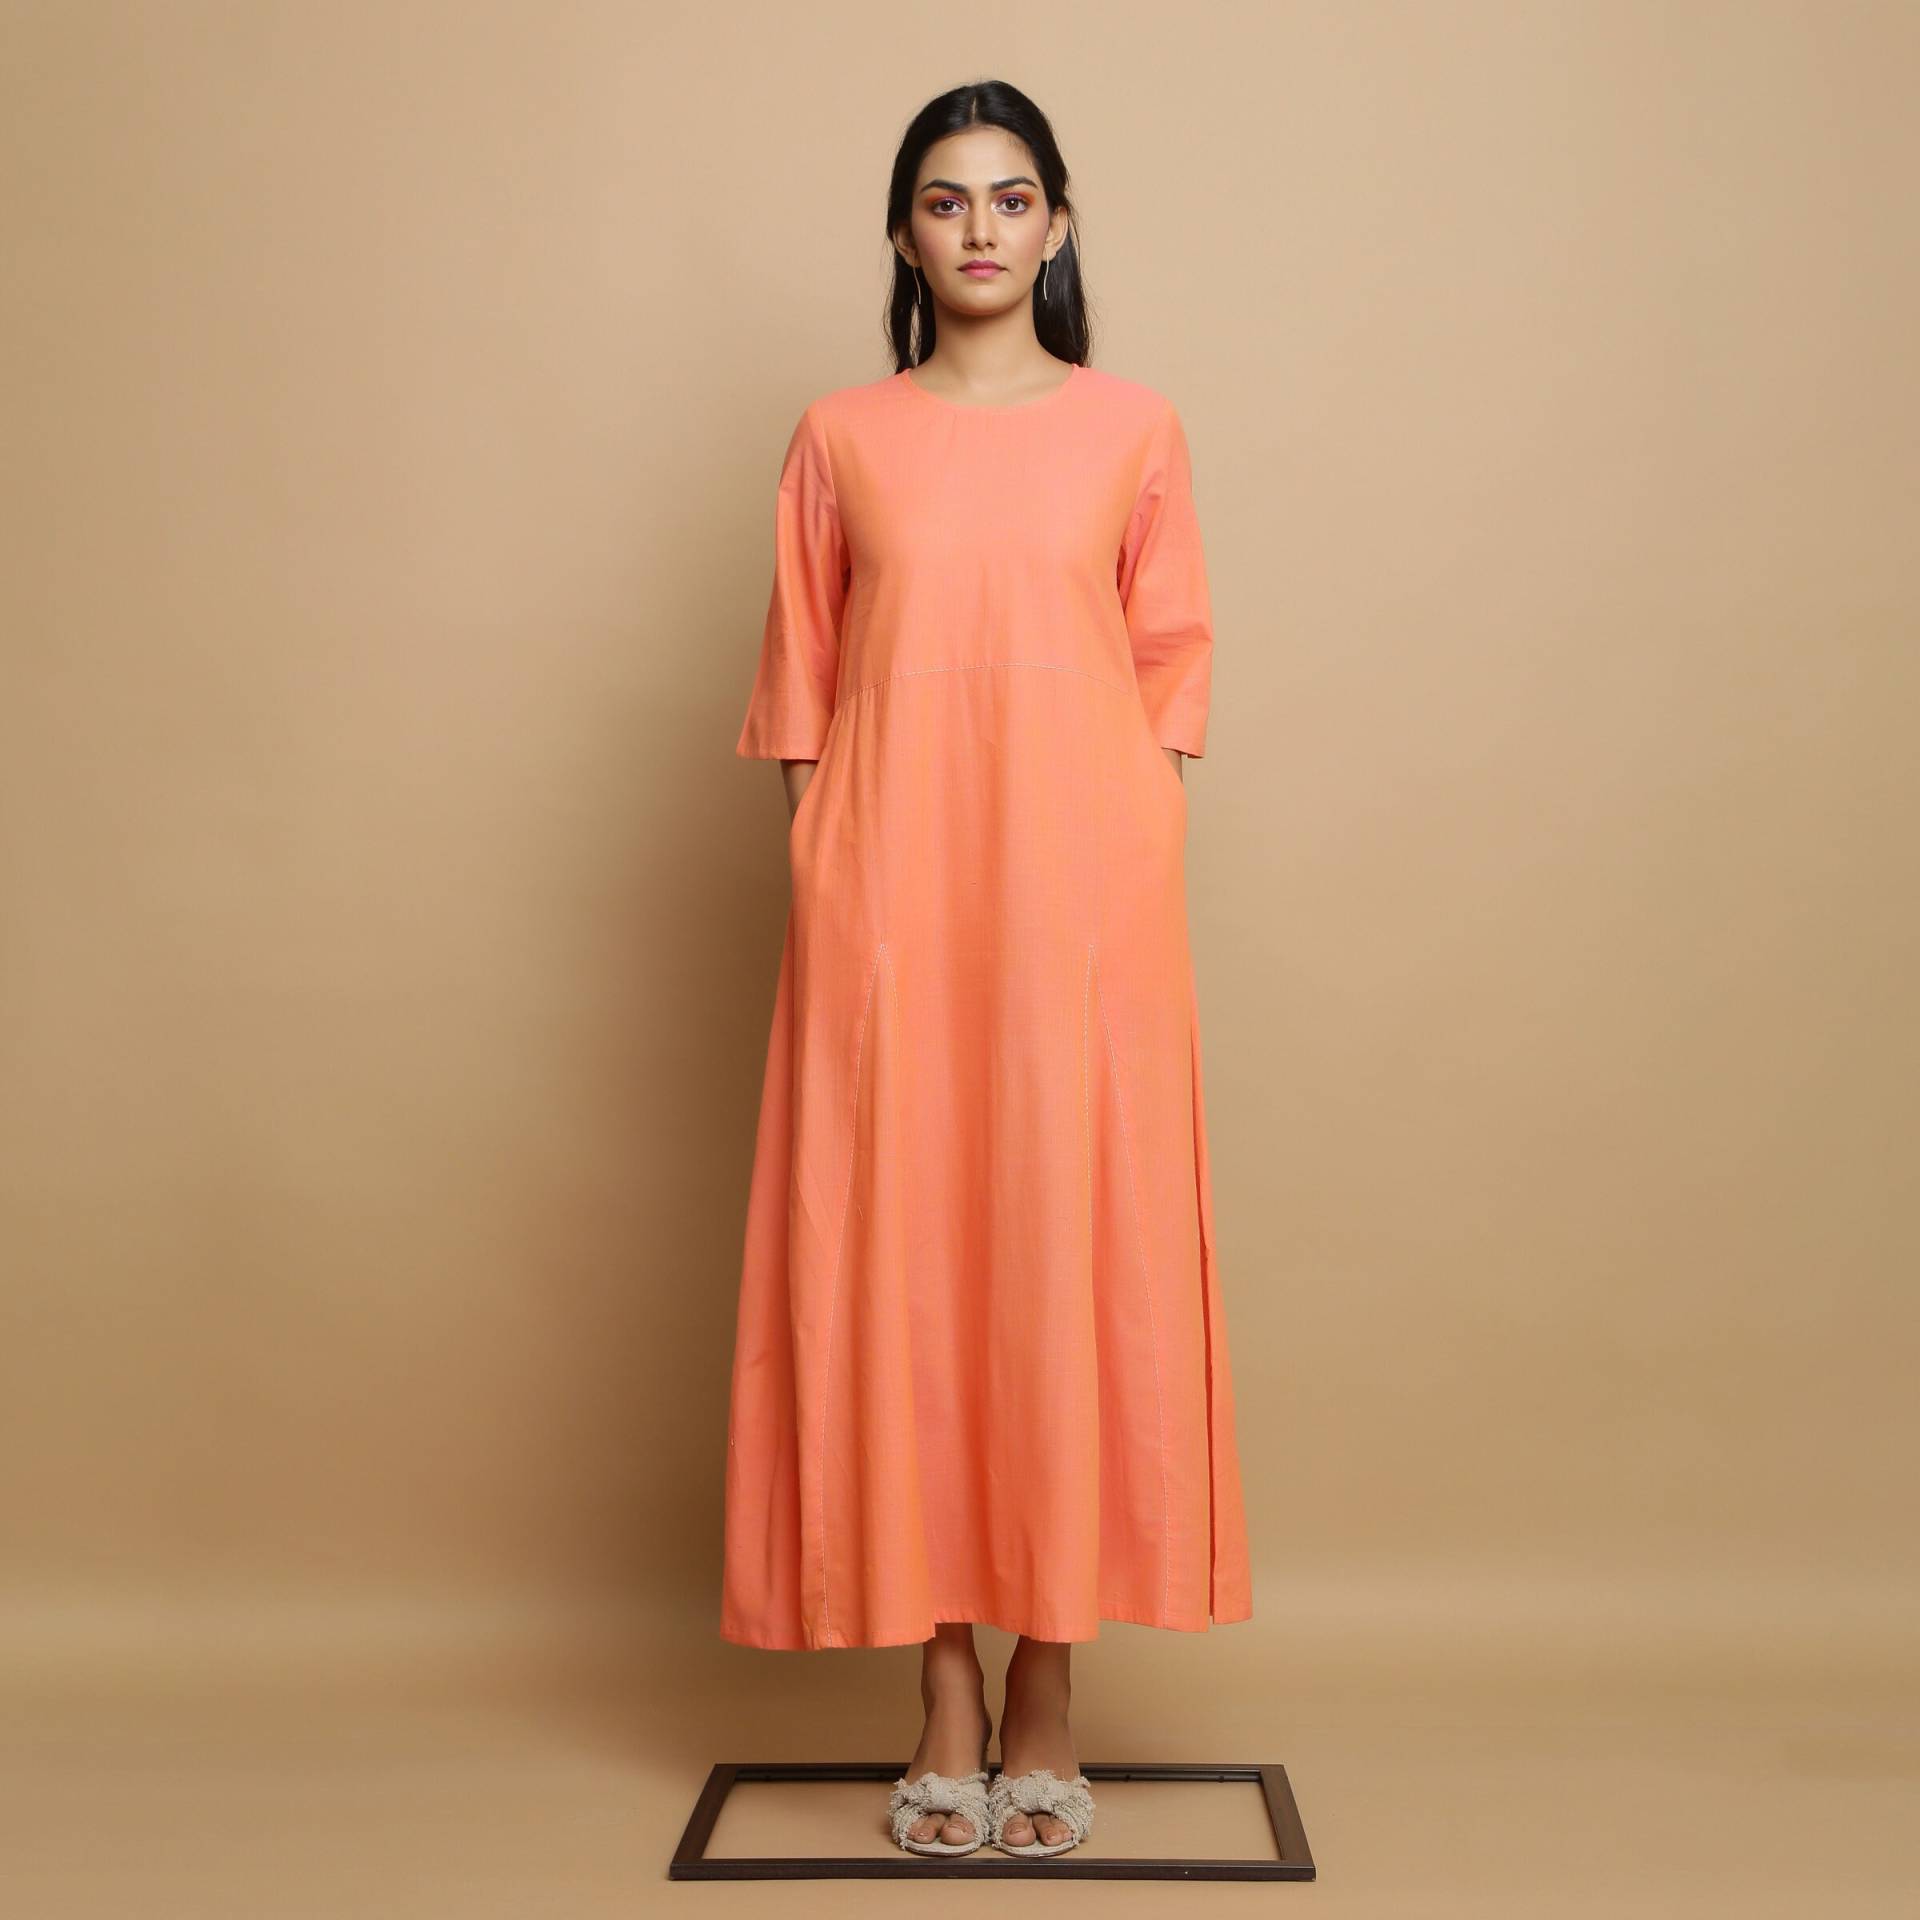 Lachsrosa 100% Baumwolle Godet Dress, Solid Flared Anpassbares Kleid Mit Taschen, Maxi Kleid, Plus Size, Petite, Tall Etsw von SeamsFriendlyIndia